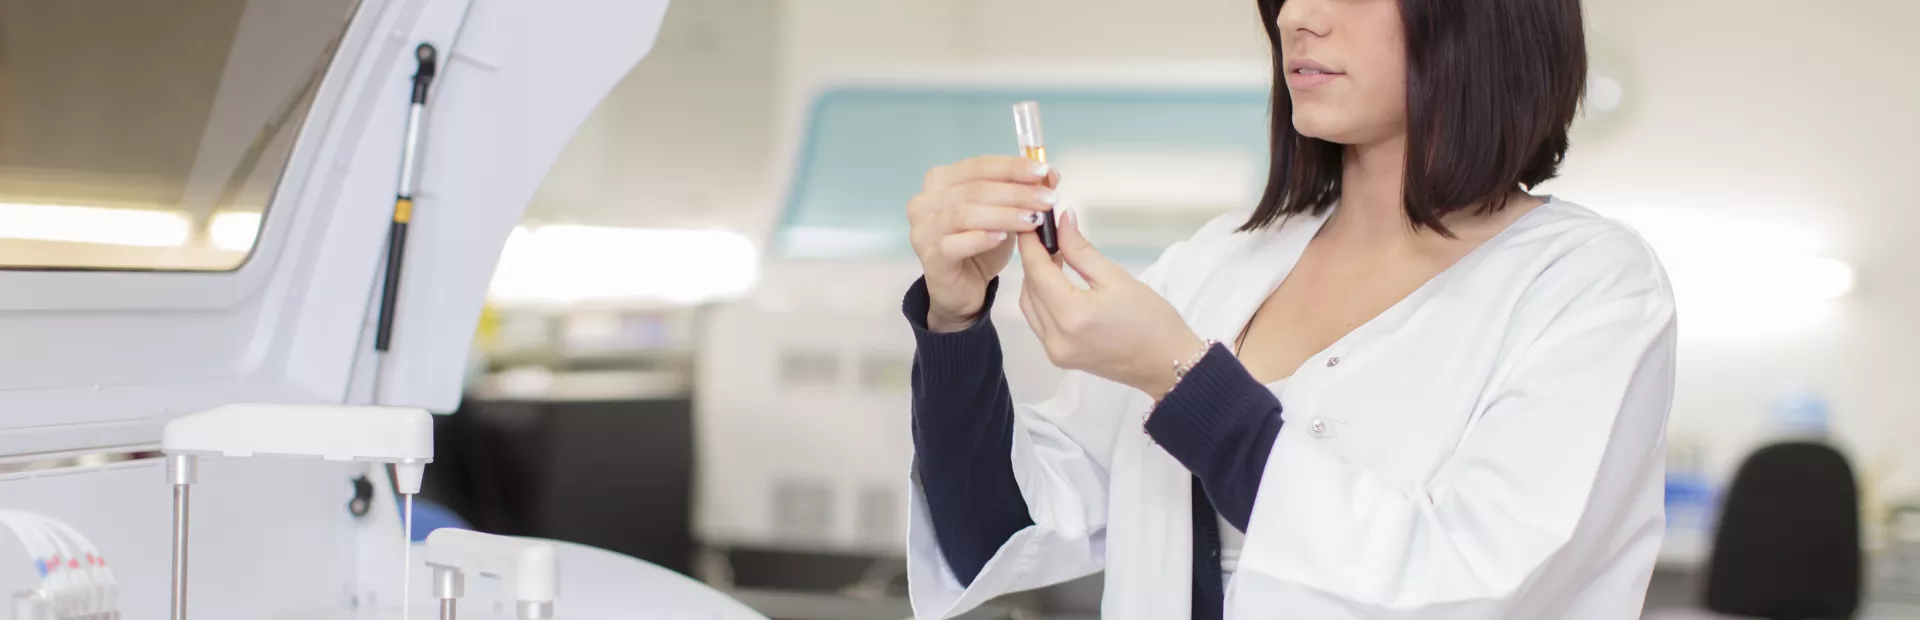 Mujer farmacéutica sujetando y observando una pipeta con un líquido dentro